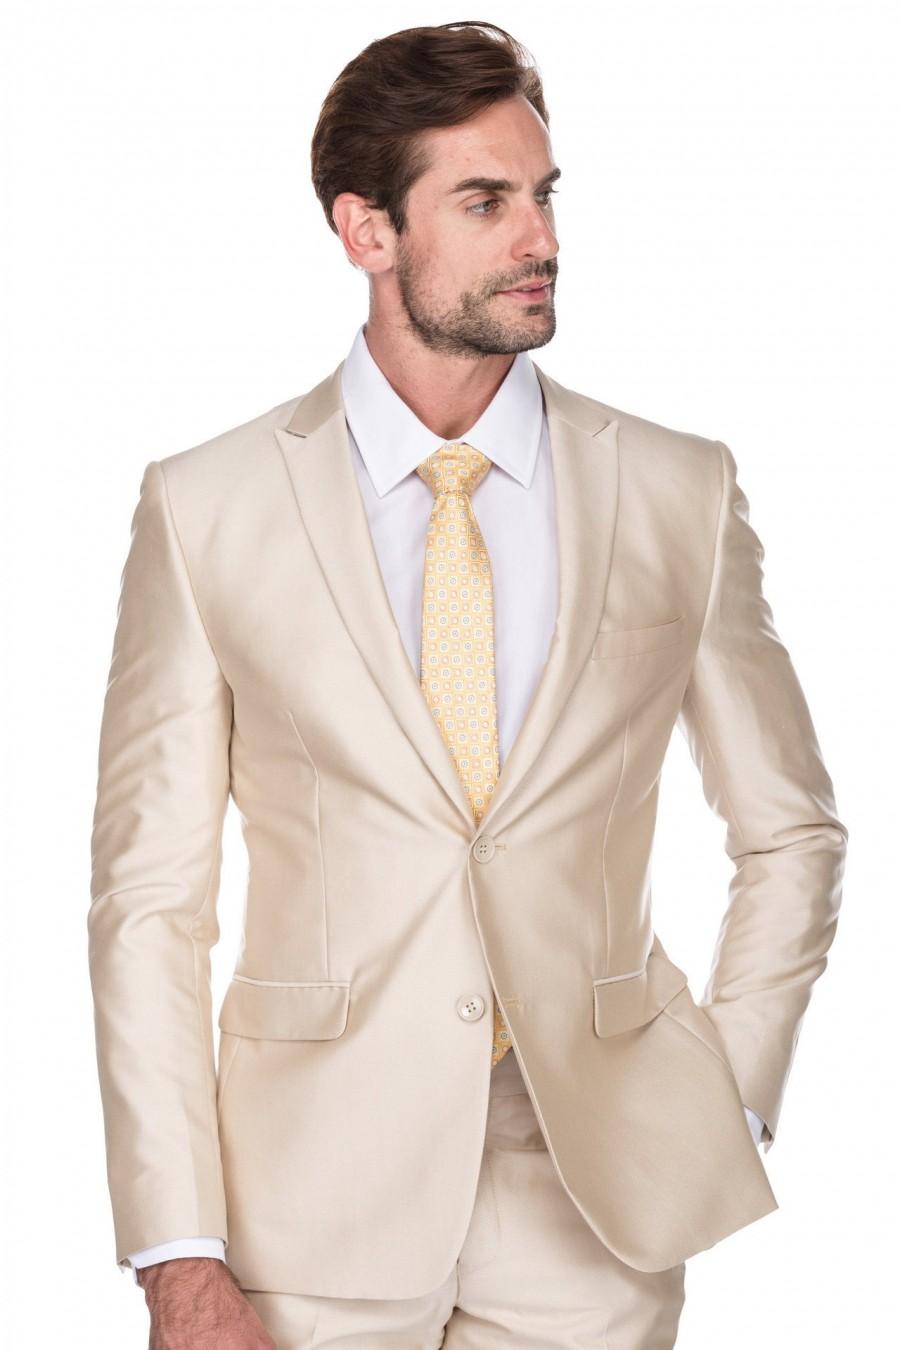 Porto Filo 2-Piece Textured Champagne Color Men's Slim Fit Wedding Suit ...